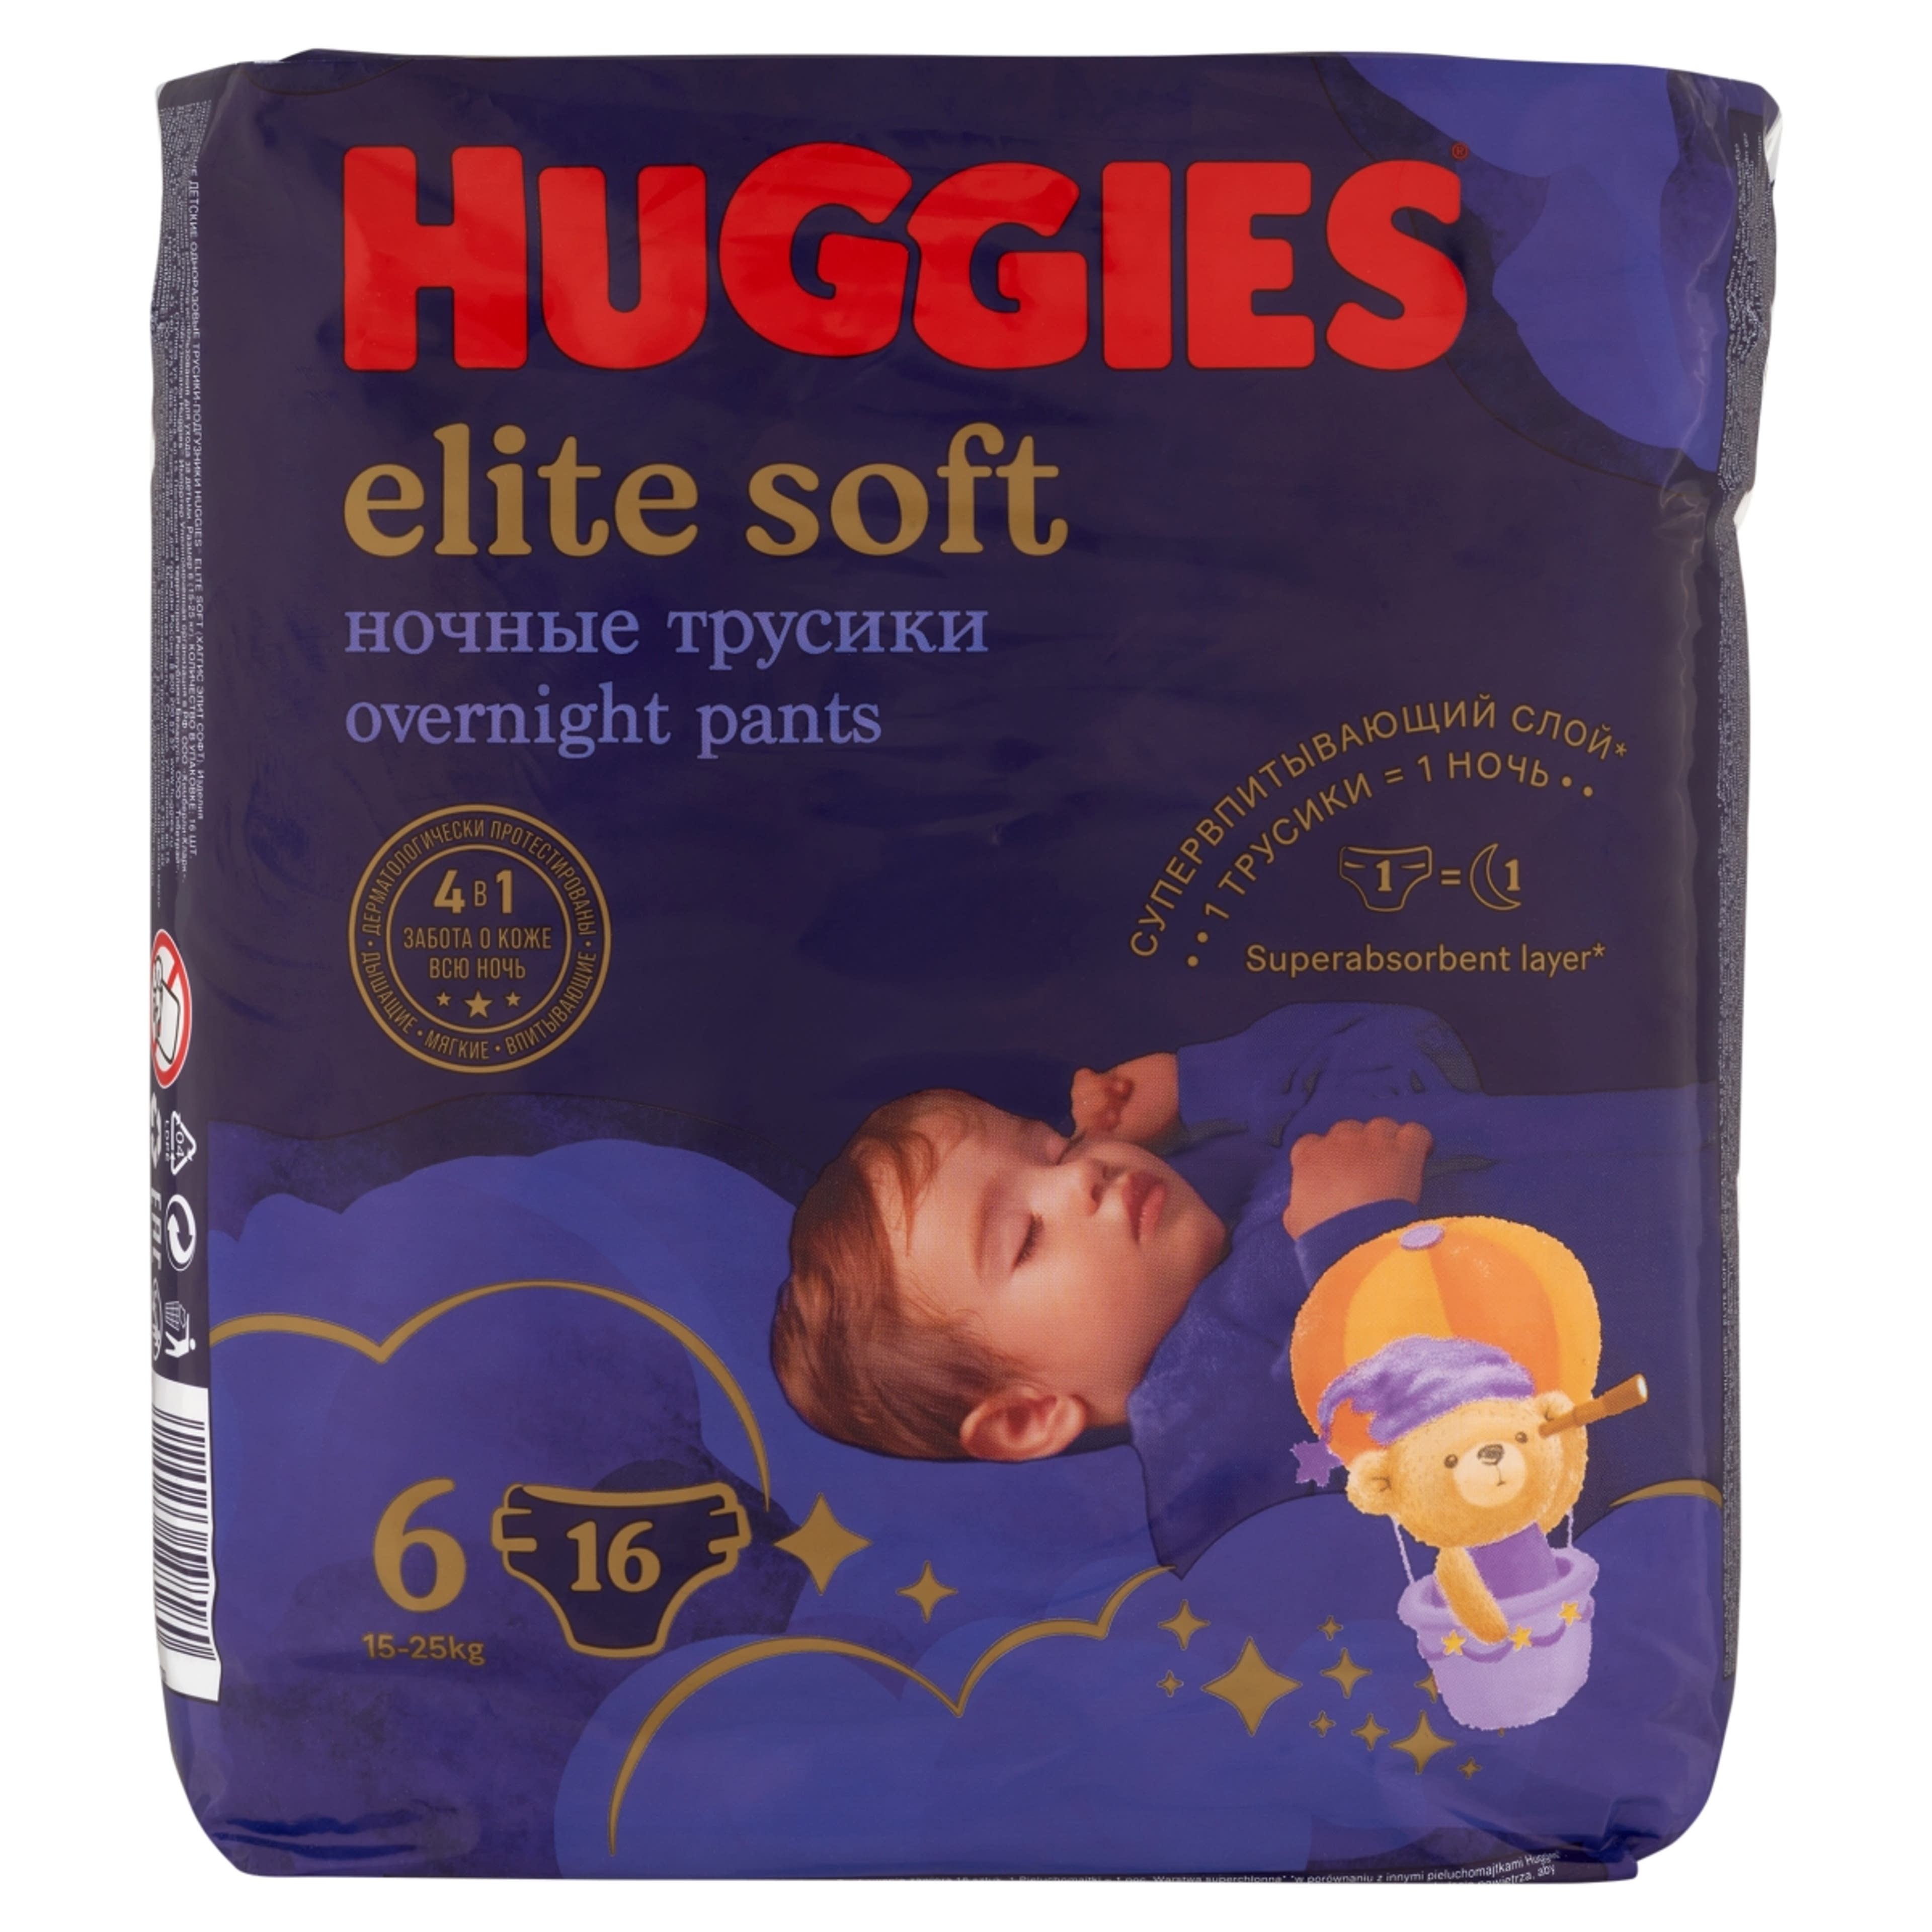 Huggies Elite Soft 6 15-25 kg éjszakai bugyipelenka - 16 db